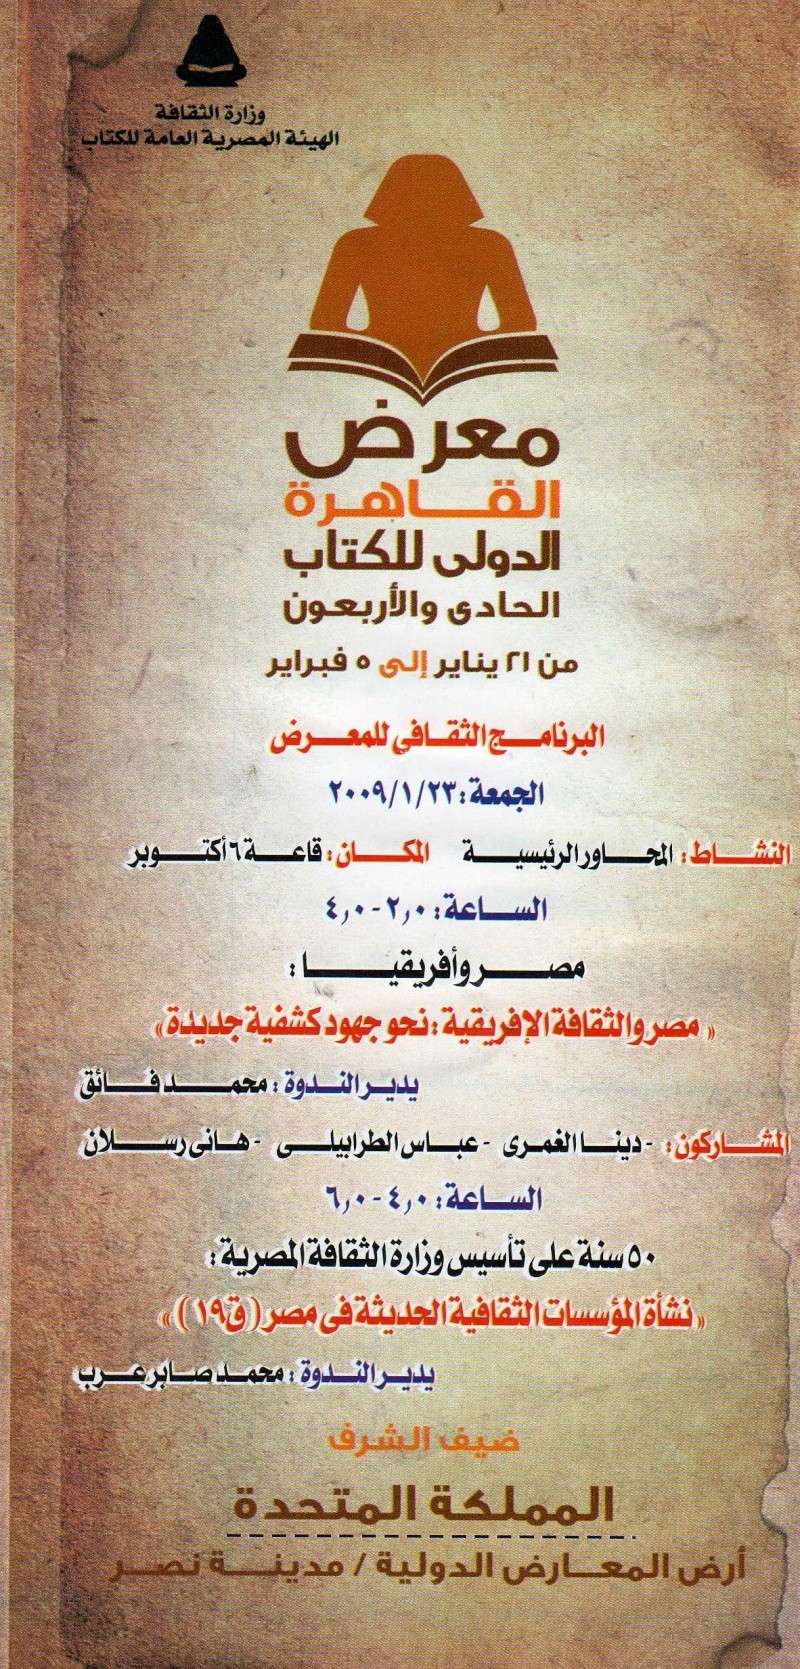 معرض القاهرة الدولي للكتاب (دليل الأيام والندوات) Kotob011